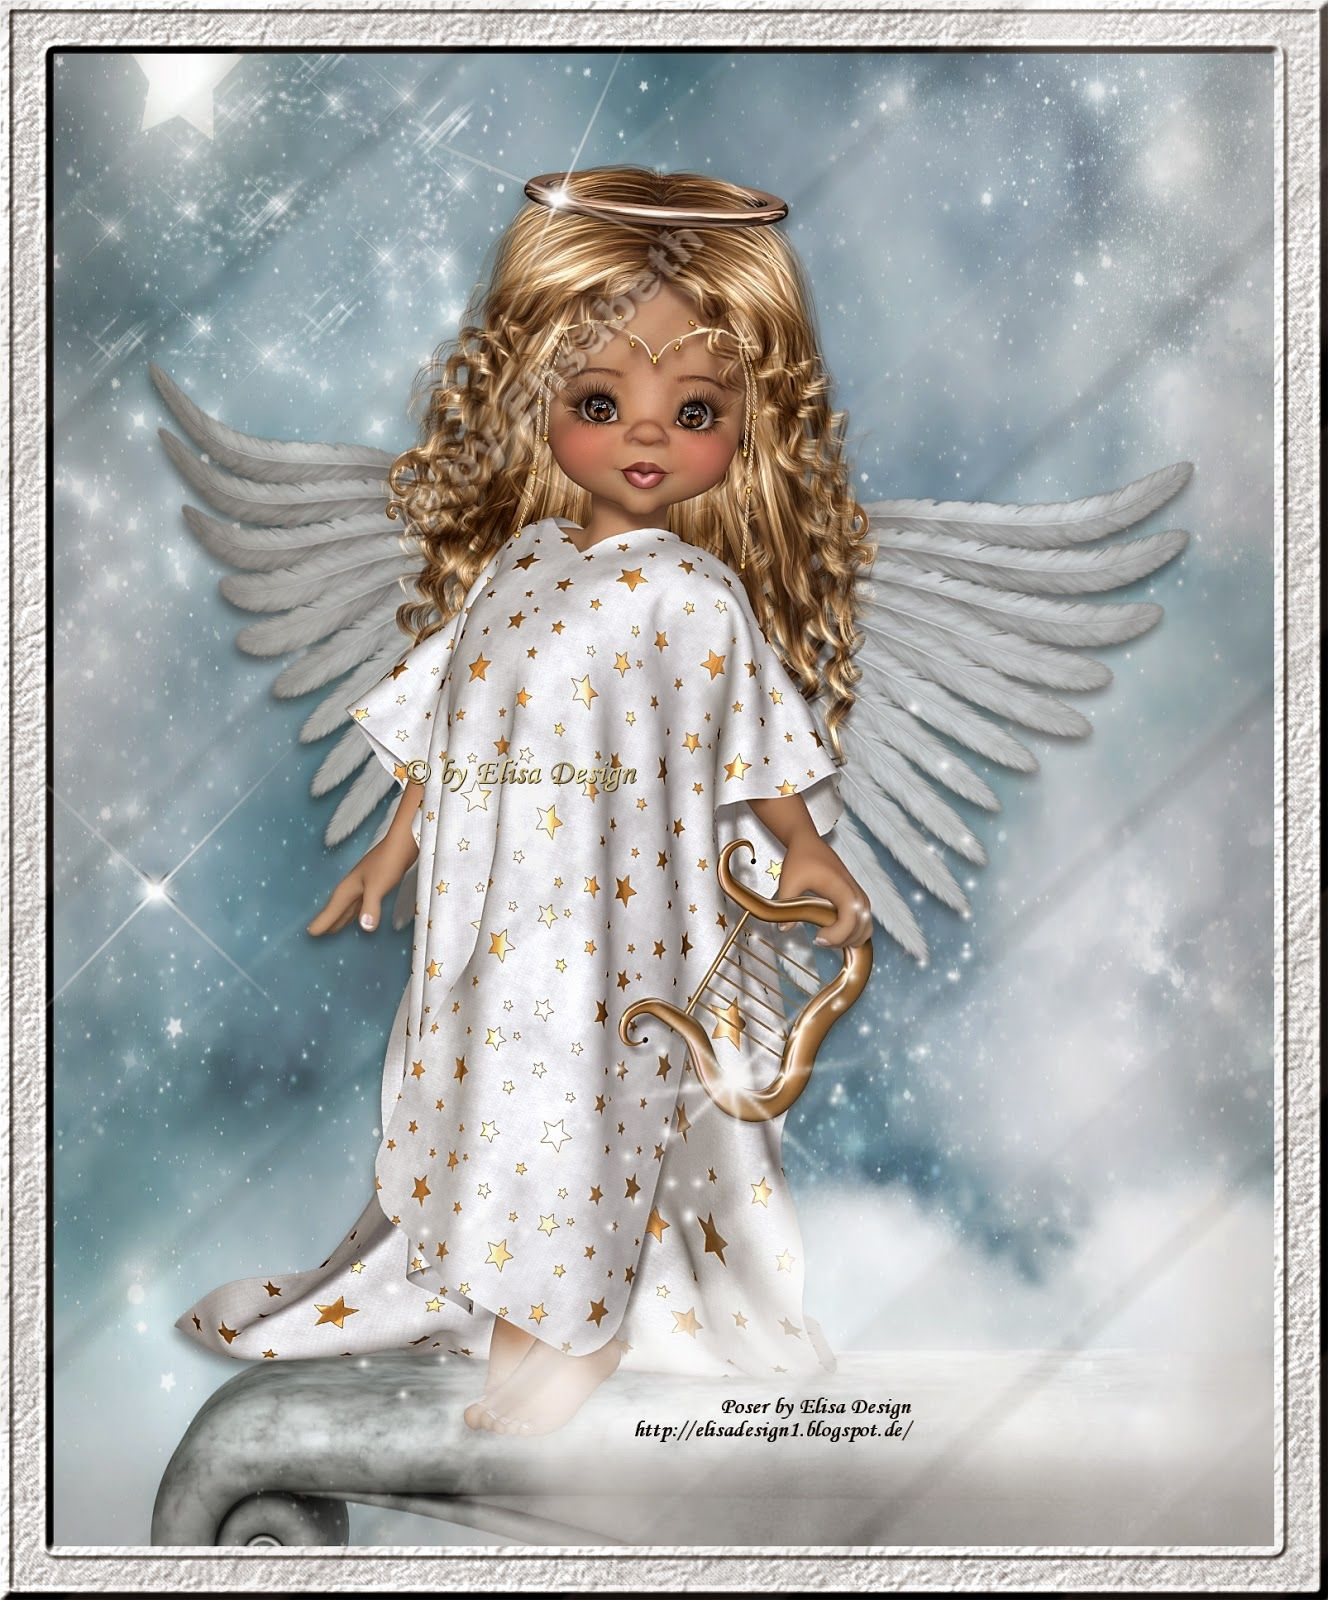 Elisadesign | Engel Bilder, Engel Kunst, Engel Zeichnung mit Hintergrundbilder Engel